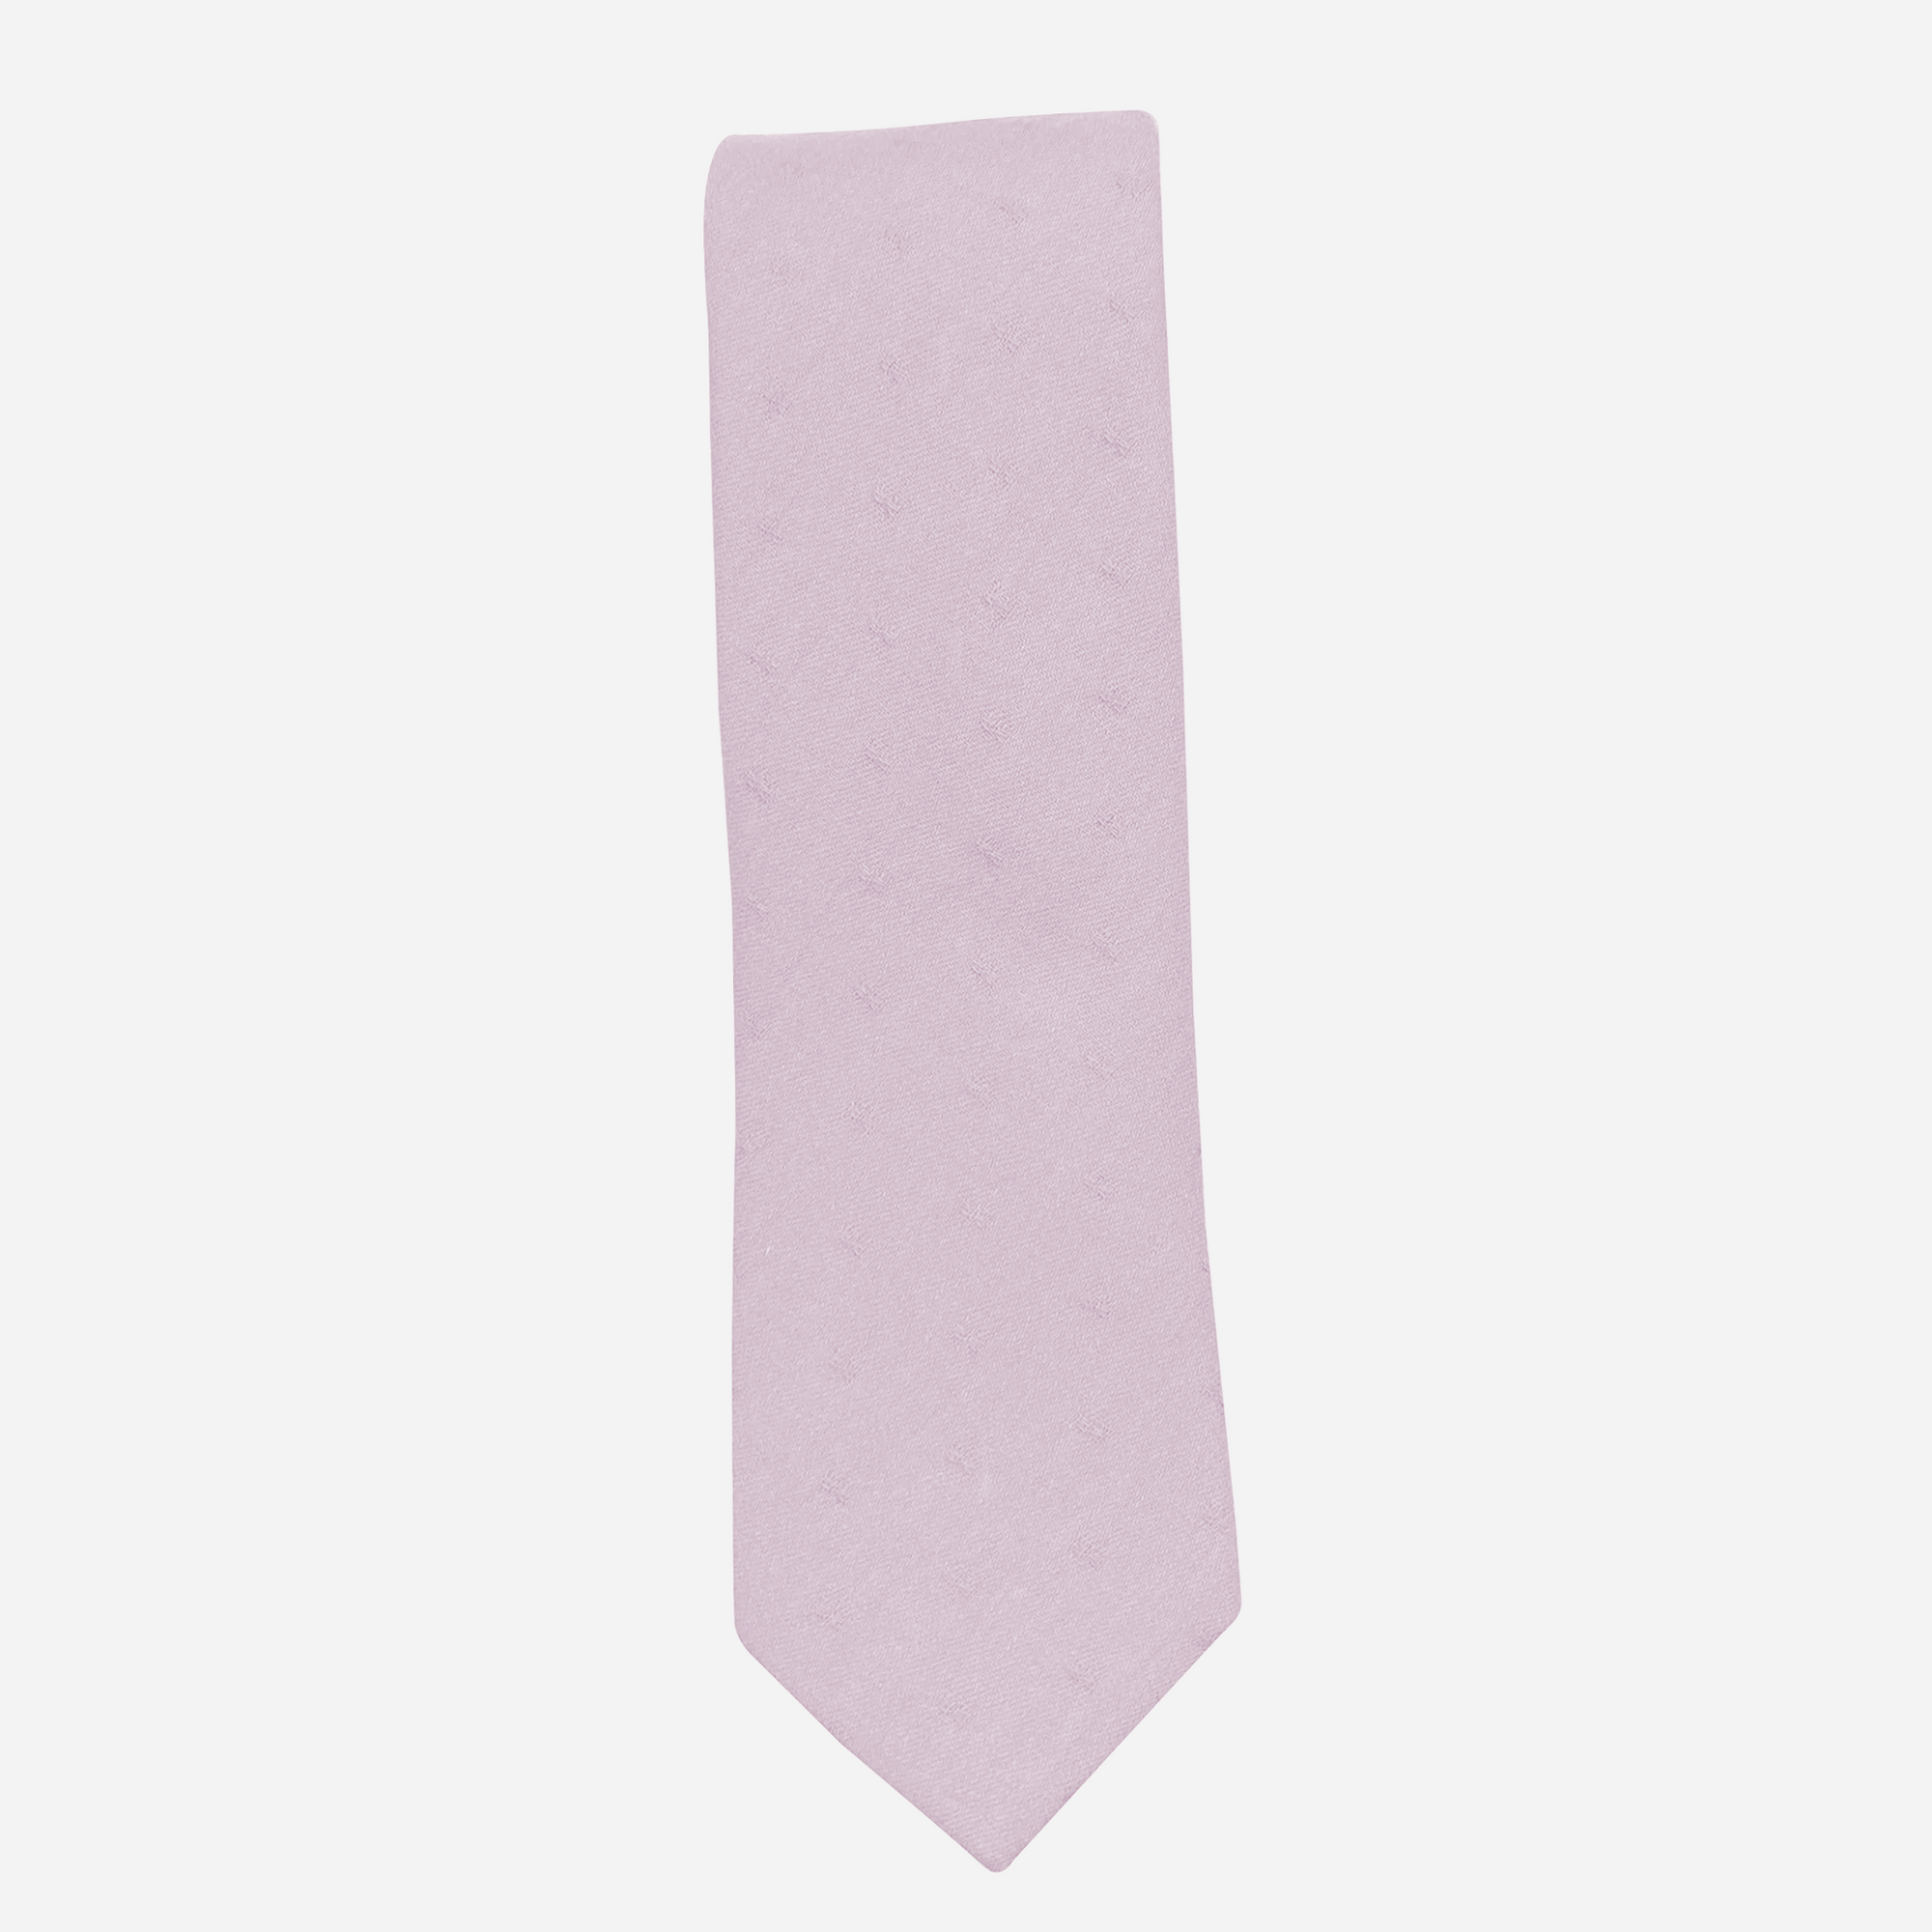 SULLIVAN - Men's Tie